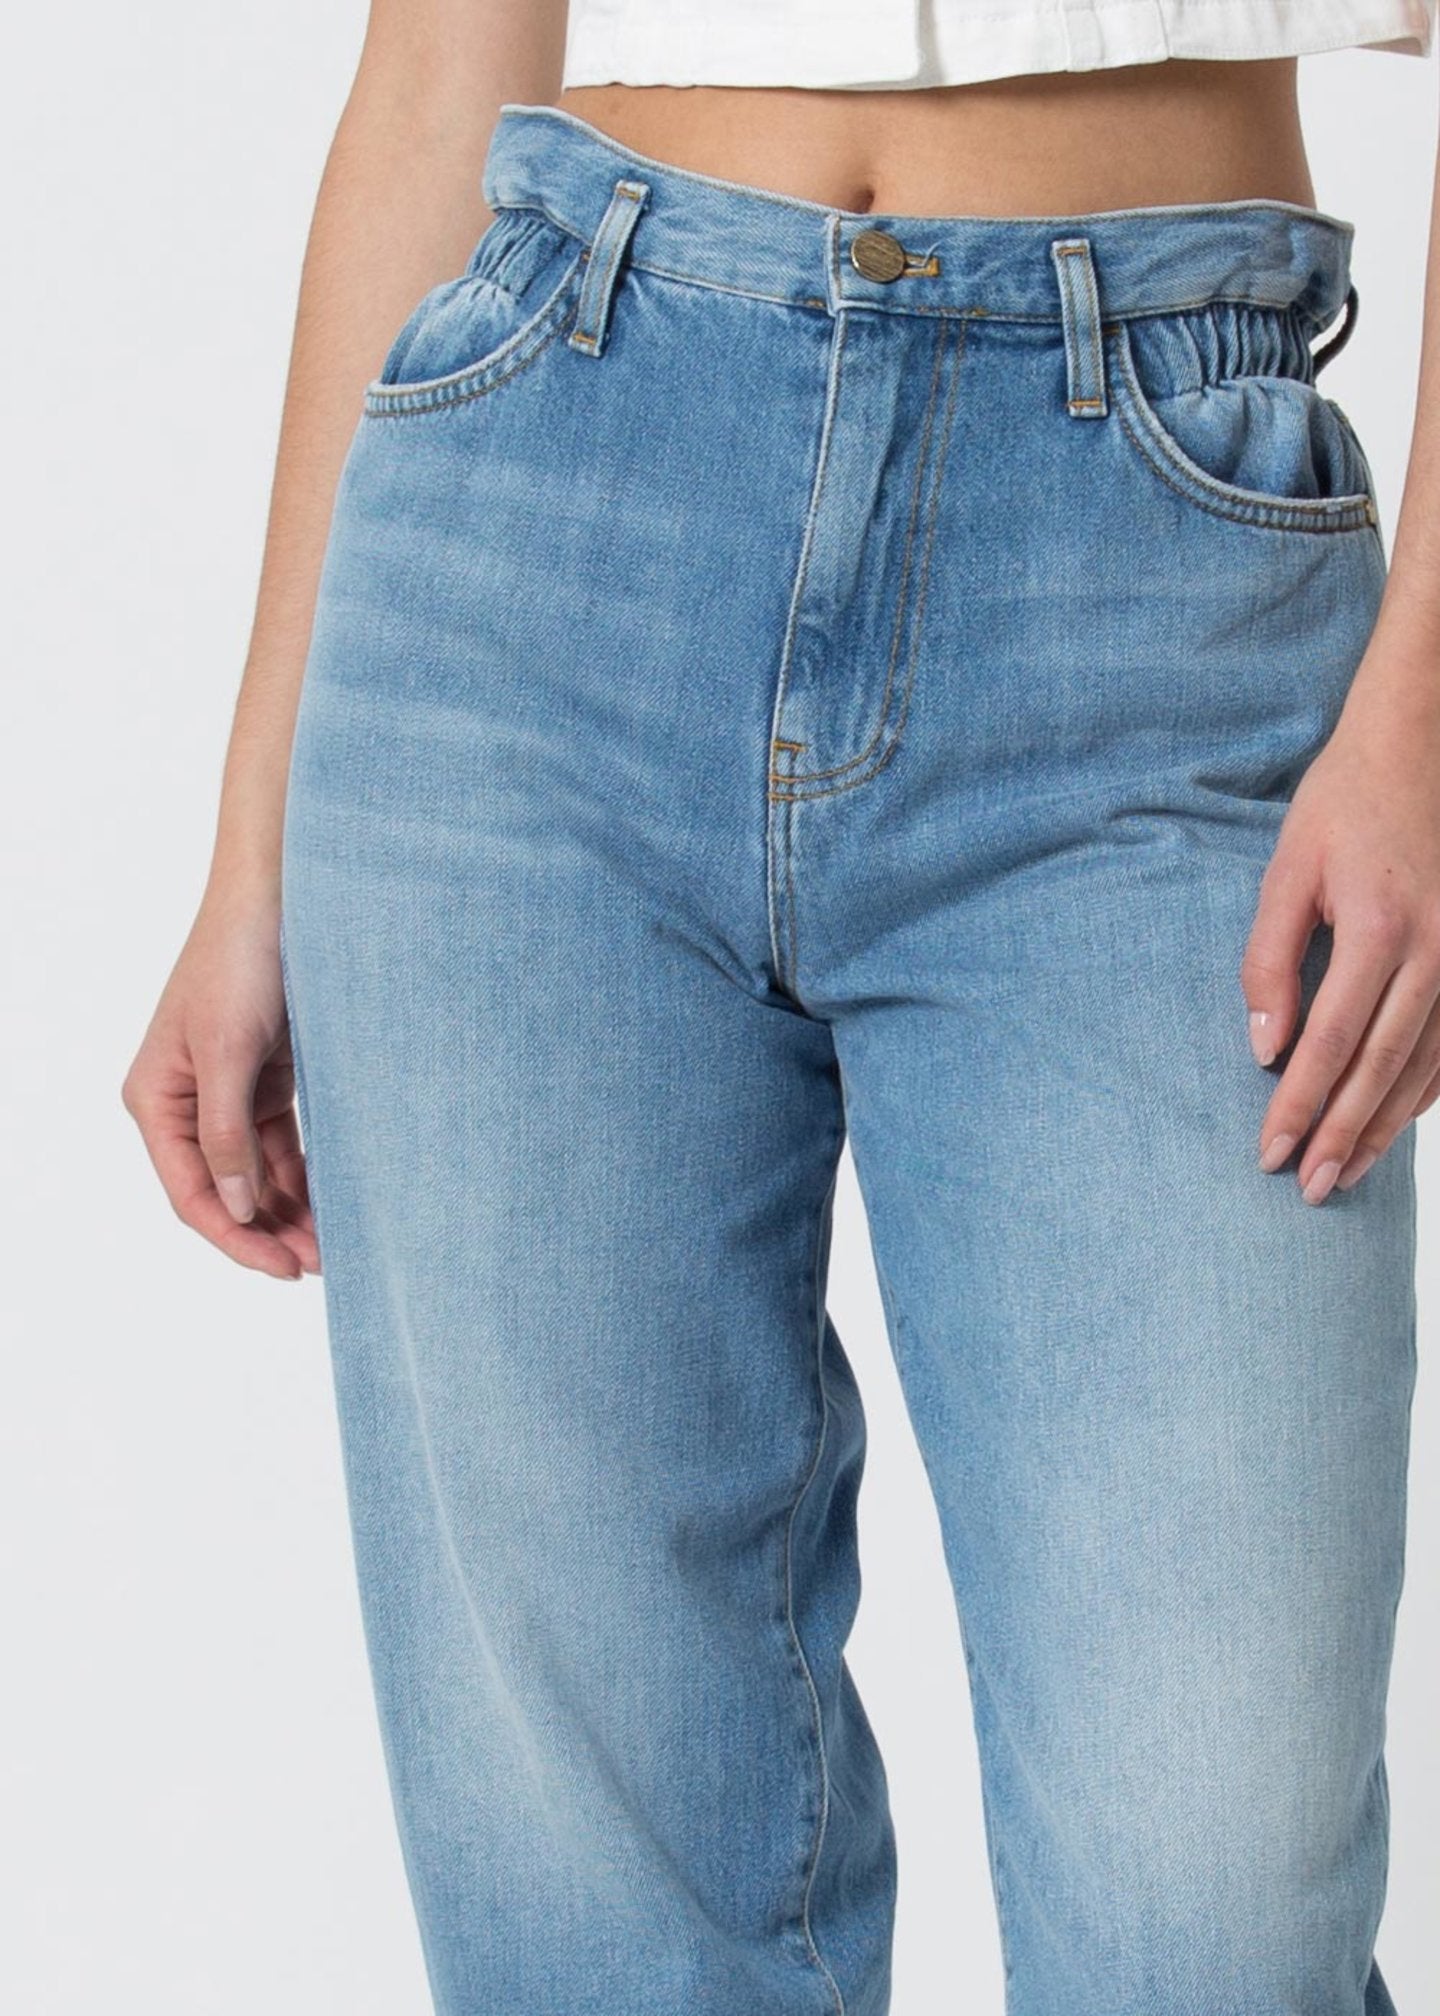 Jeans Kocca alla Caviglia / Jeans - Ideal Moda